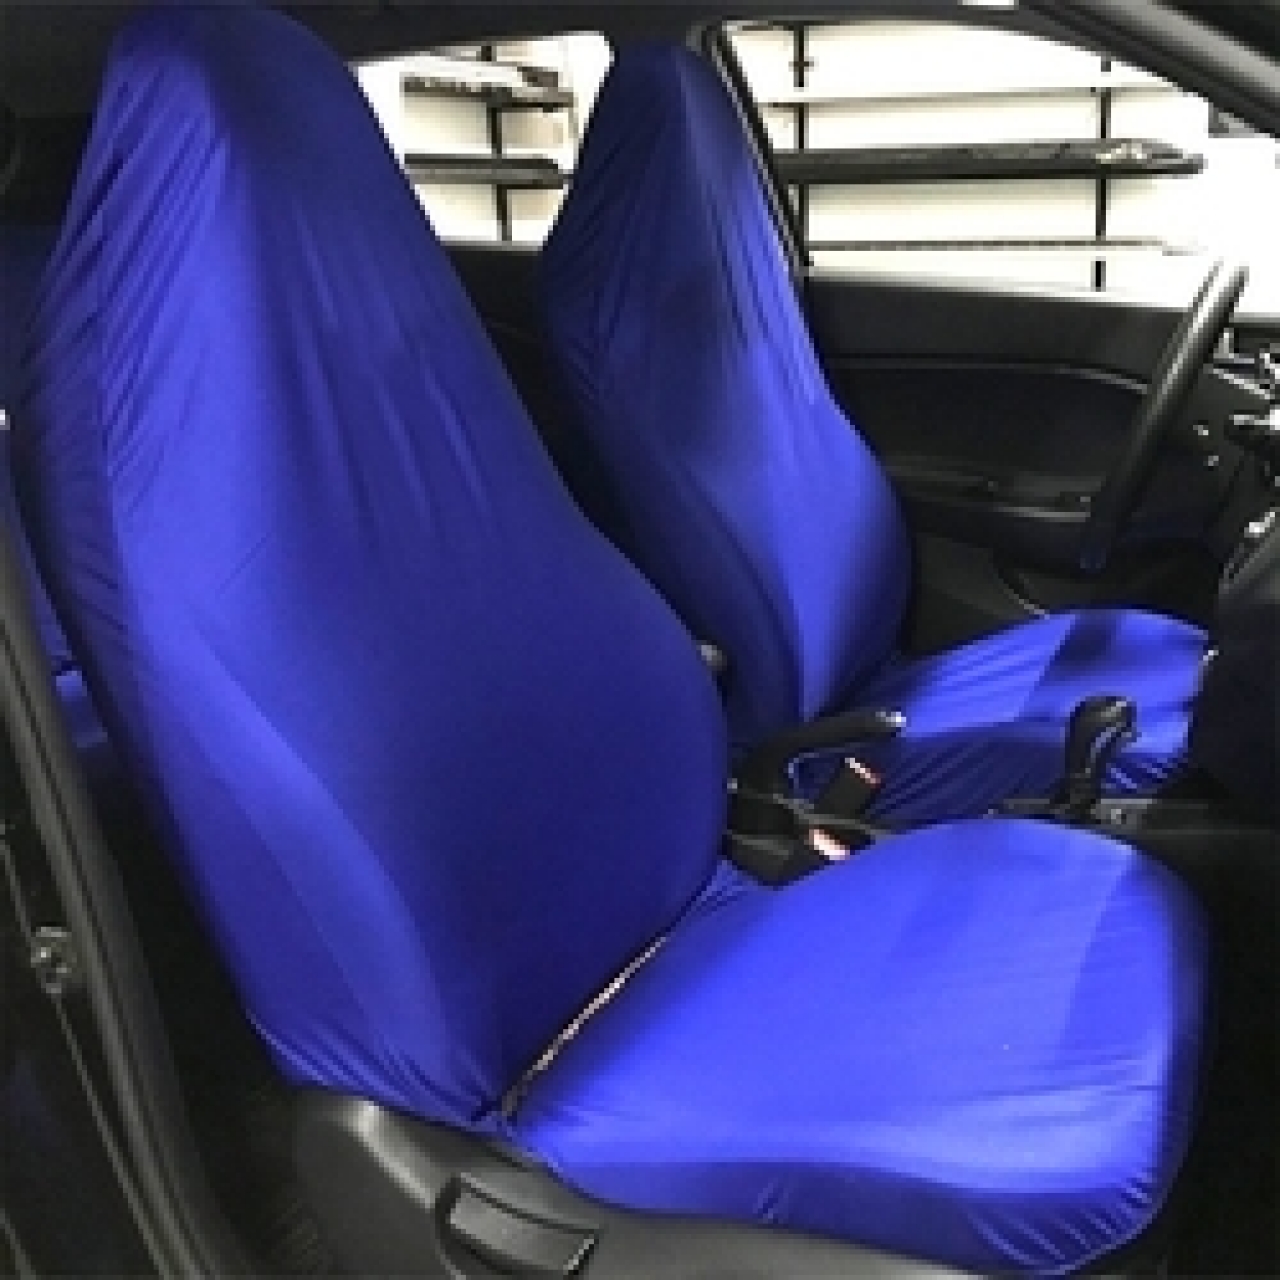 Honda Penye Servis Kılıfı Mavi Fiyat ve Modelleri